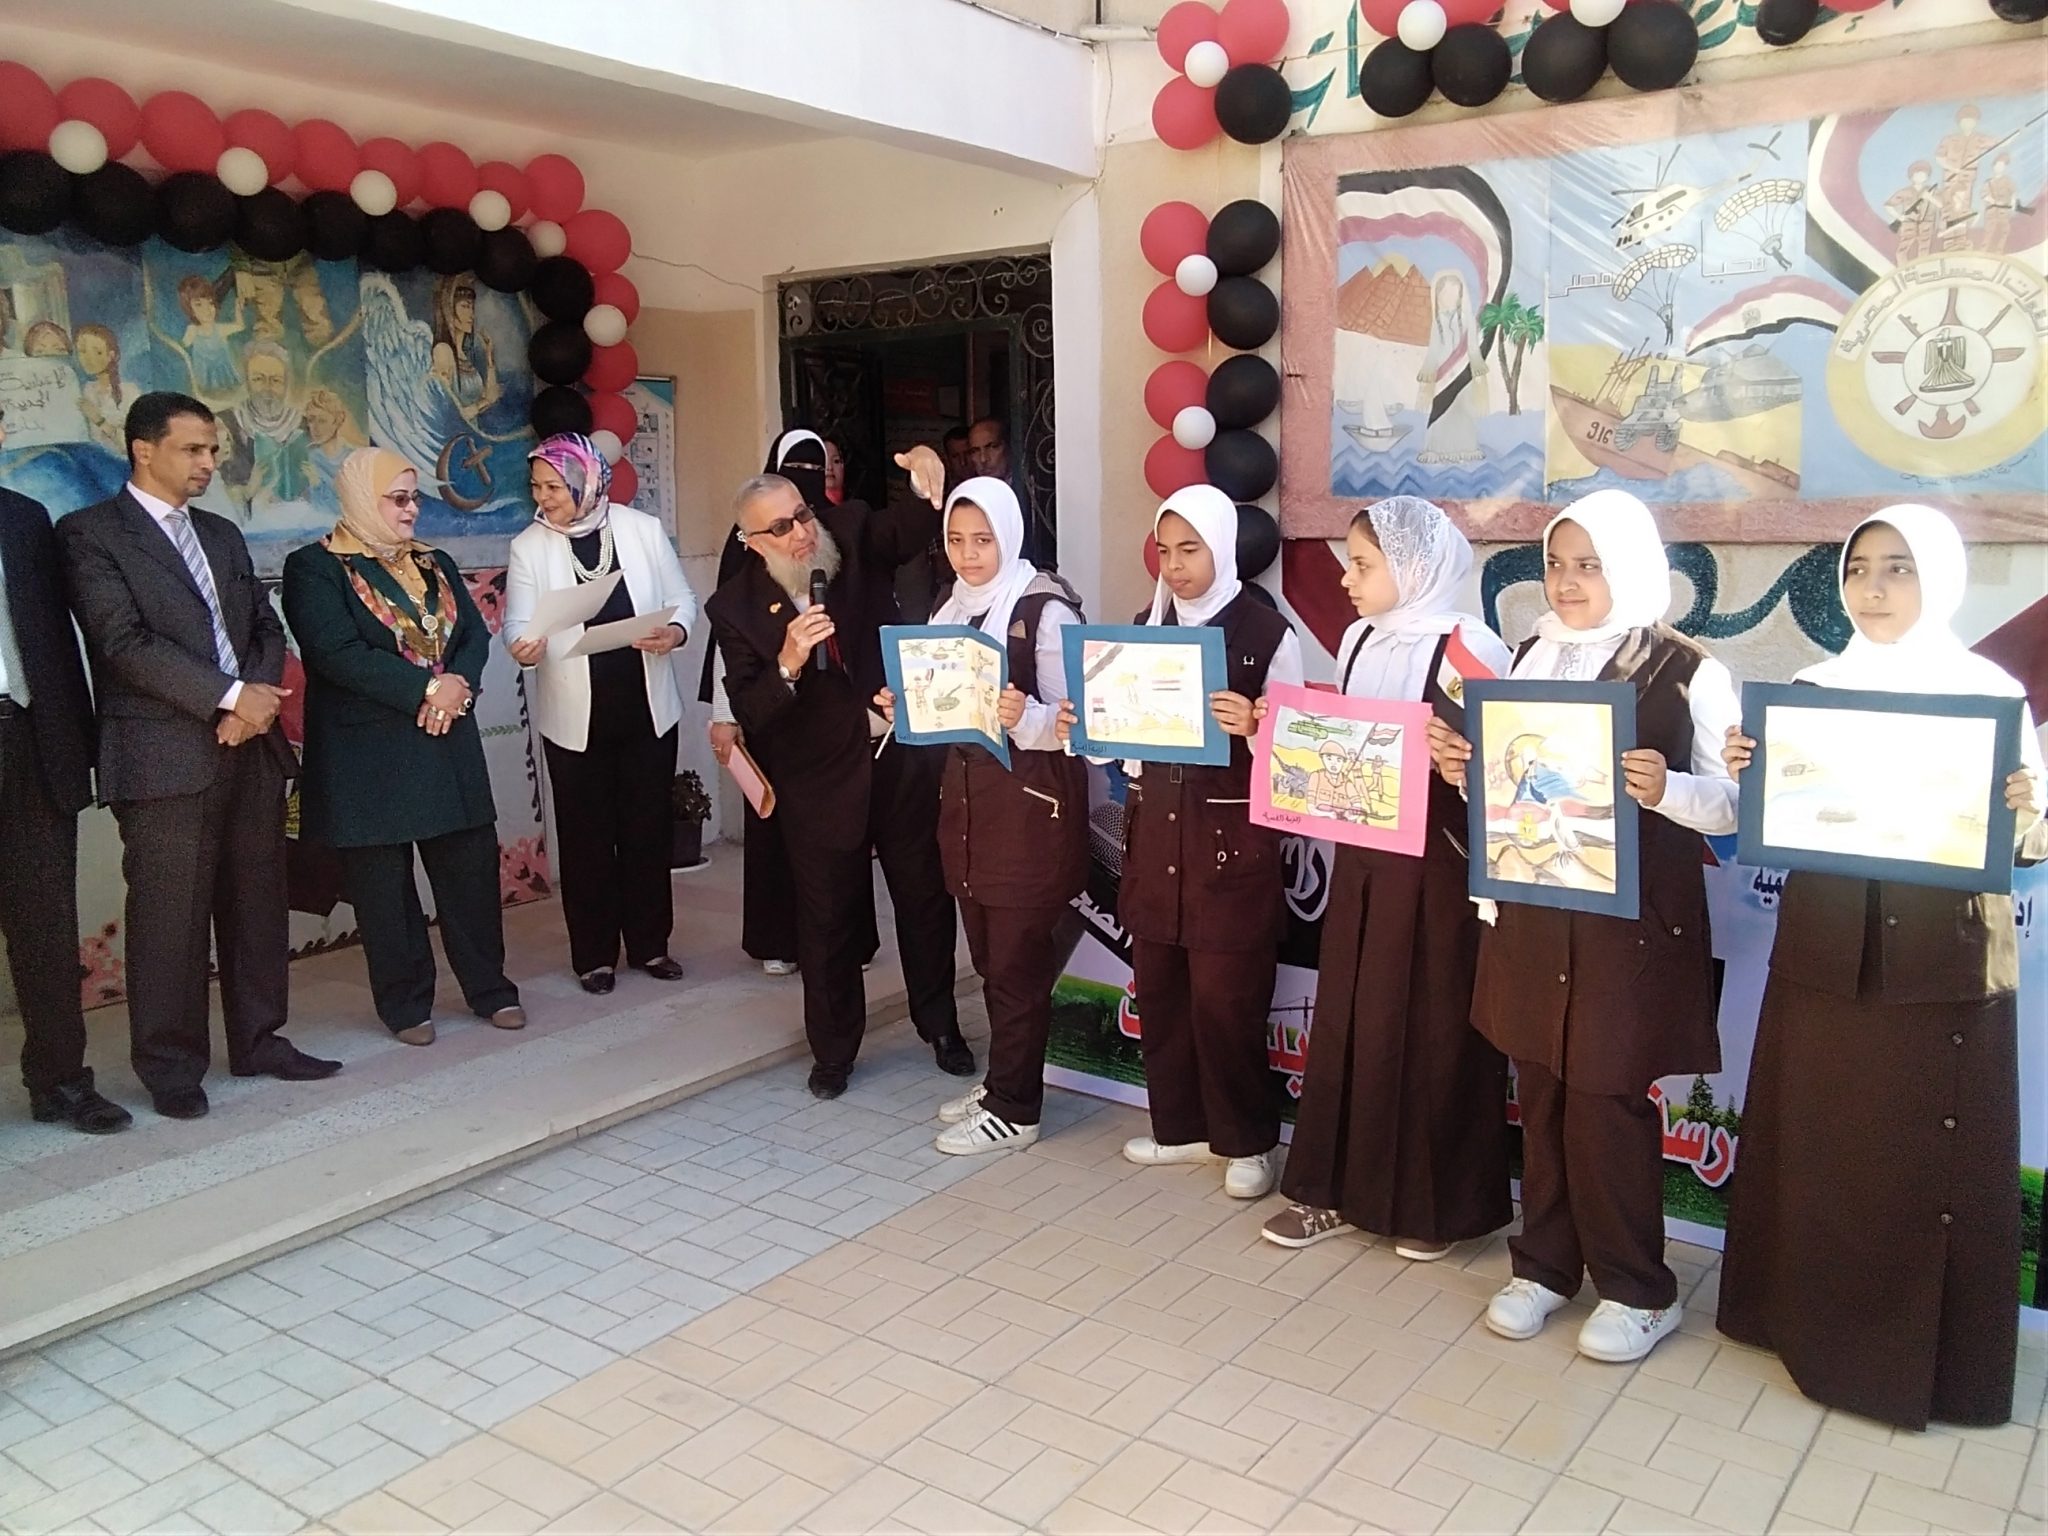   صور|| مدارس كفر الشيخ تحتفل بنصر أكتوبر بـ«عروض فنية ومسرحية»